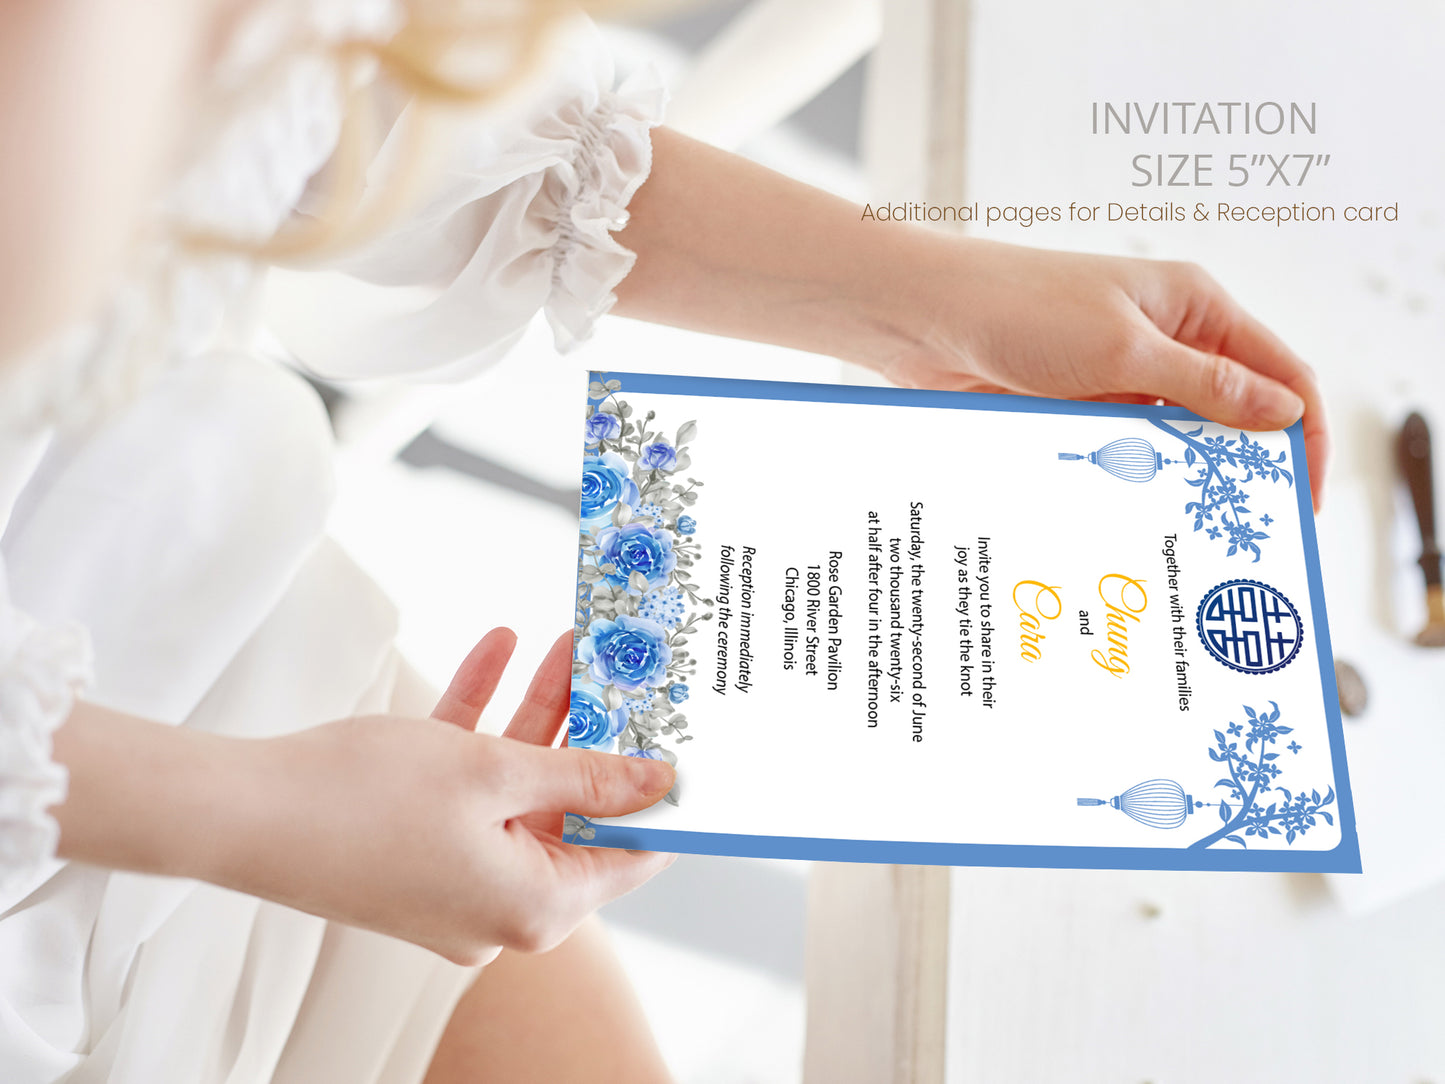 Cute Vietnamese wedding invite, Áo dài theme, Customize Invite Template #vmwc220305